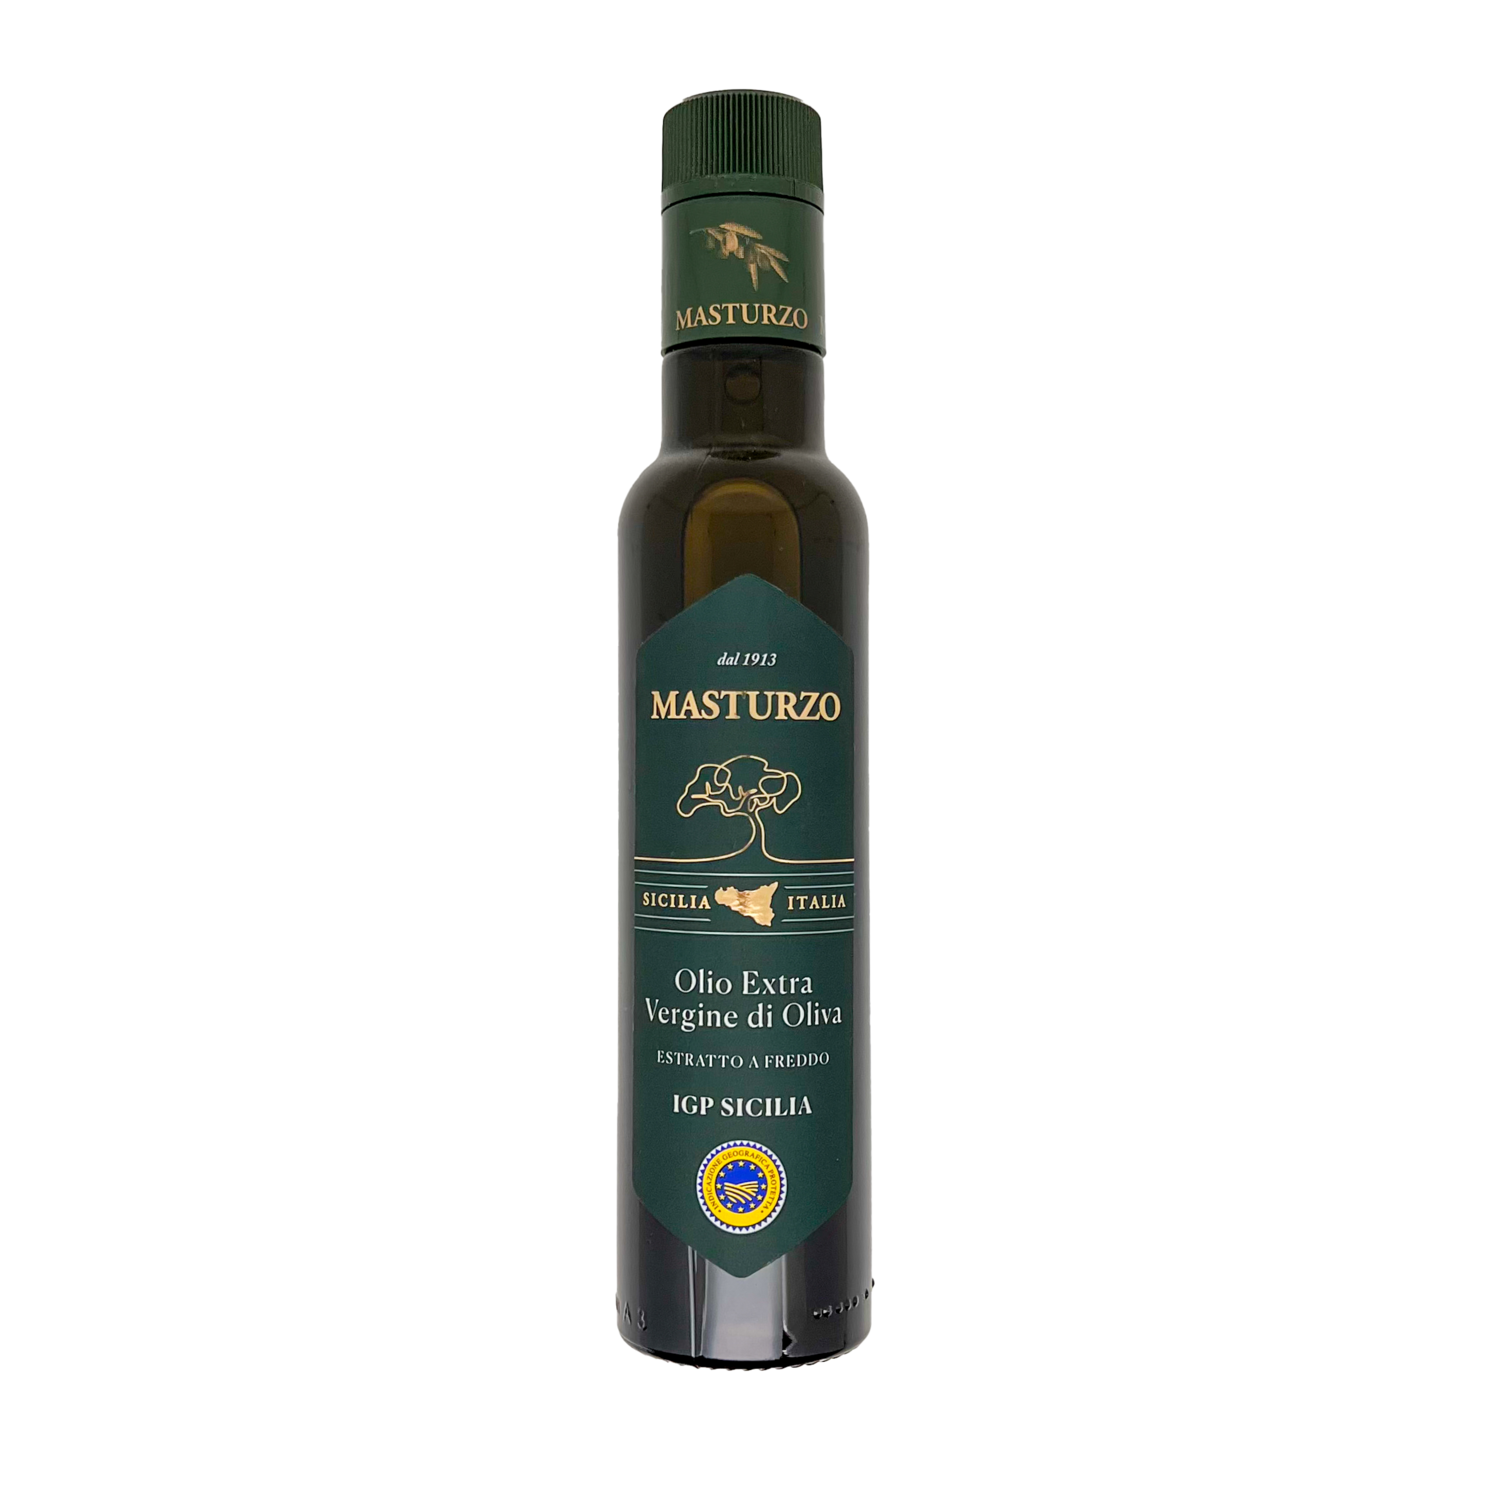 Olio extra vergine di olivia "IGP SICILIA"MASTURZO"